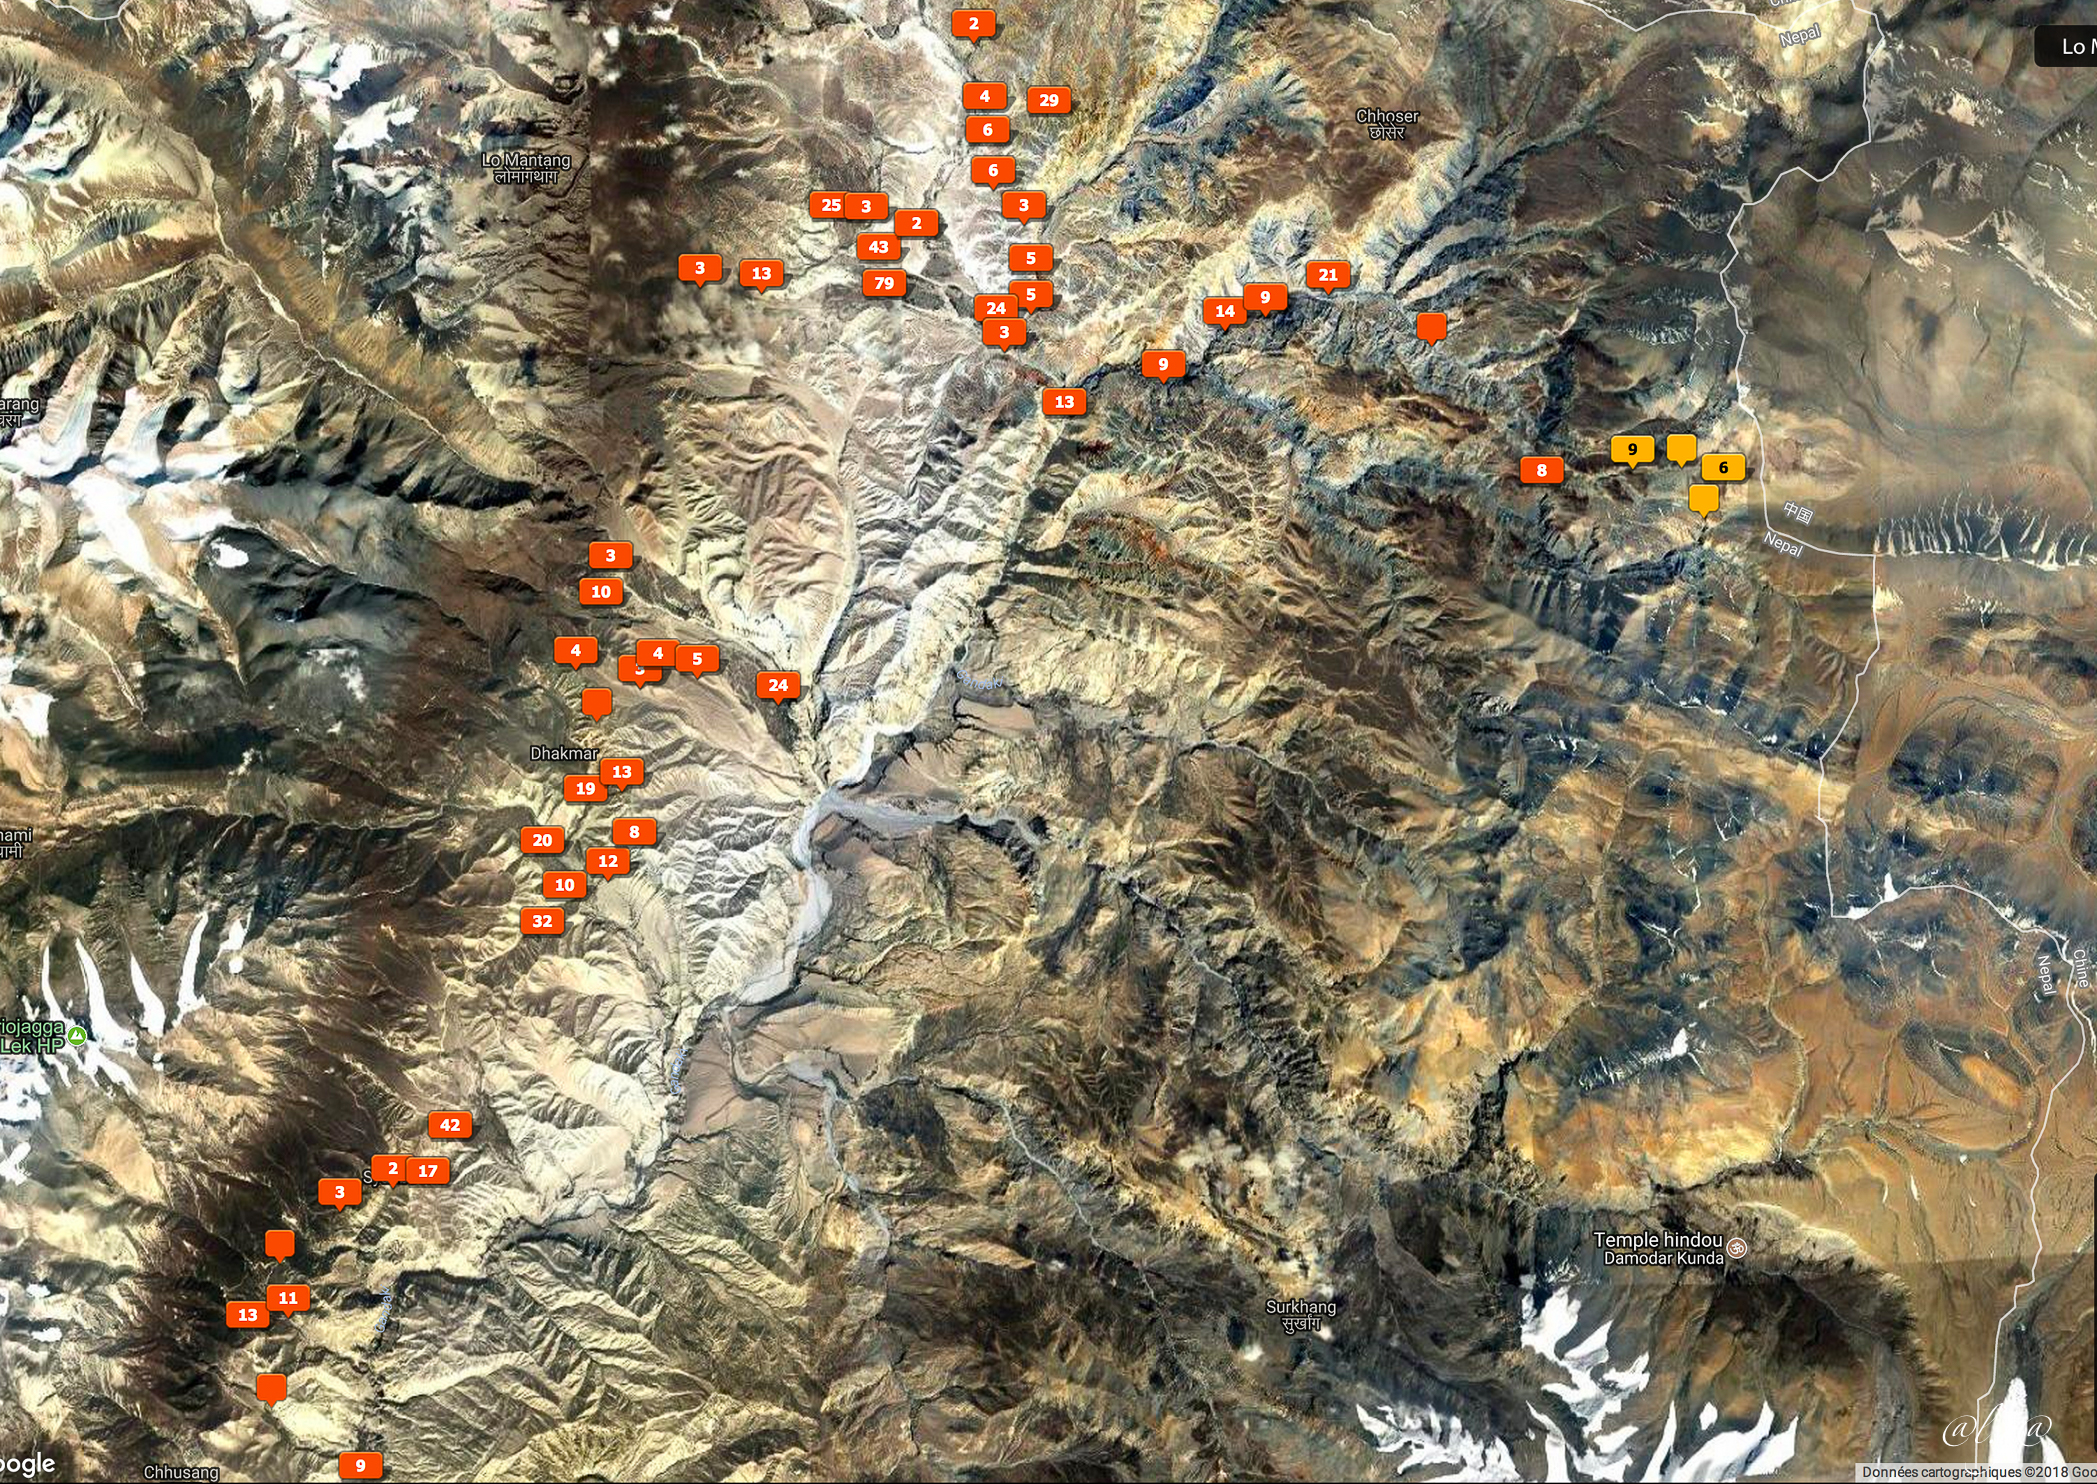 Salde Camp (3920m) - Madhi Camp (4420m) - Cave Camp (4950m)